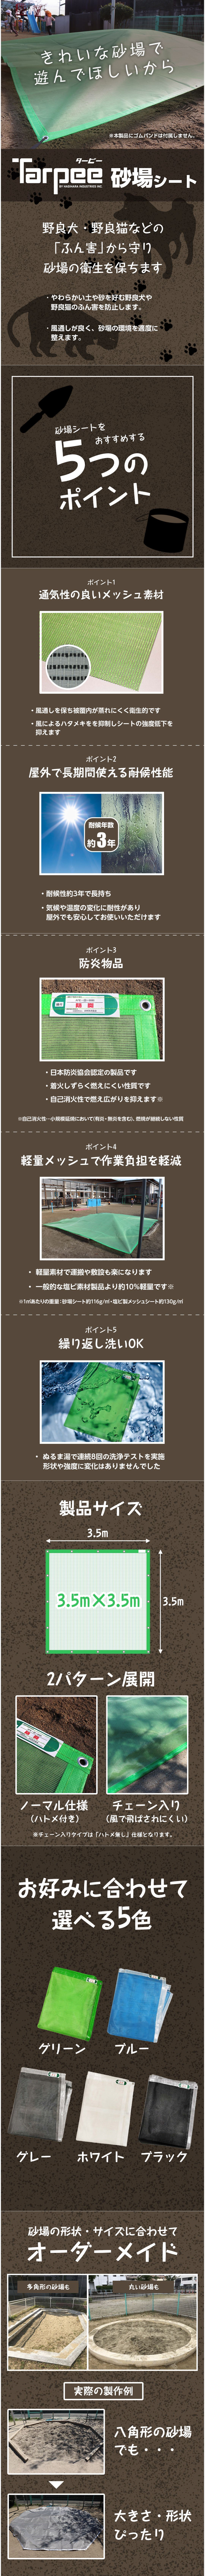 ターピー 砂場シート – 萩原工業公式オンラインショップ